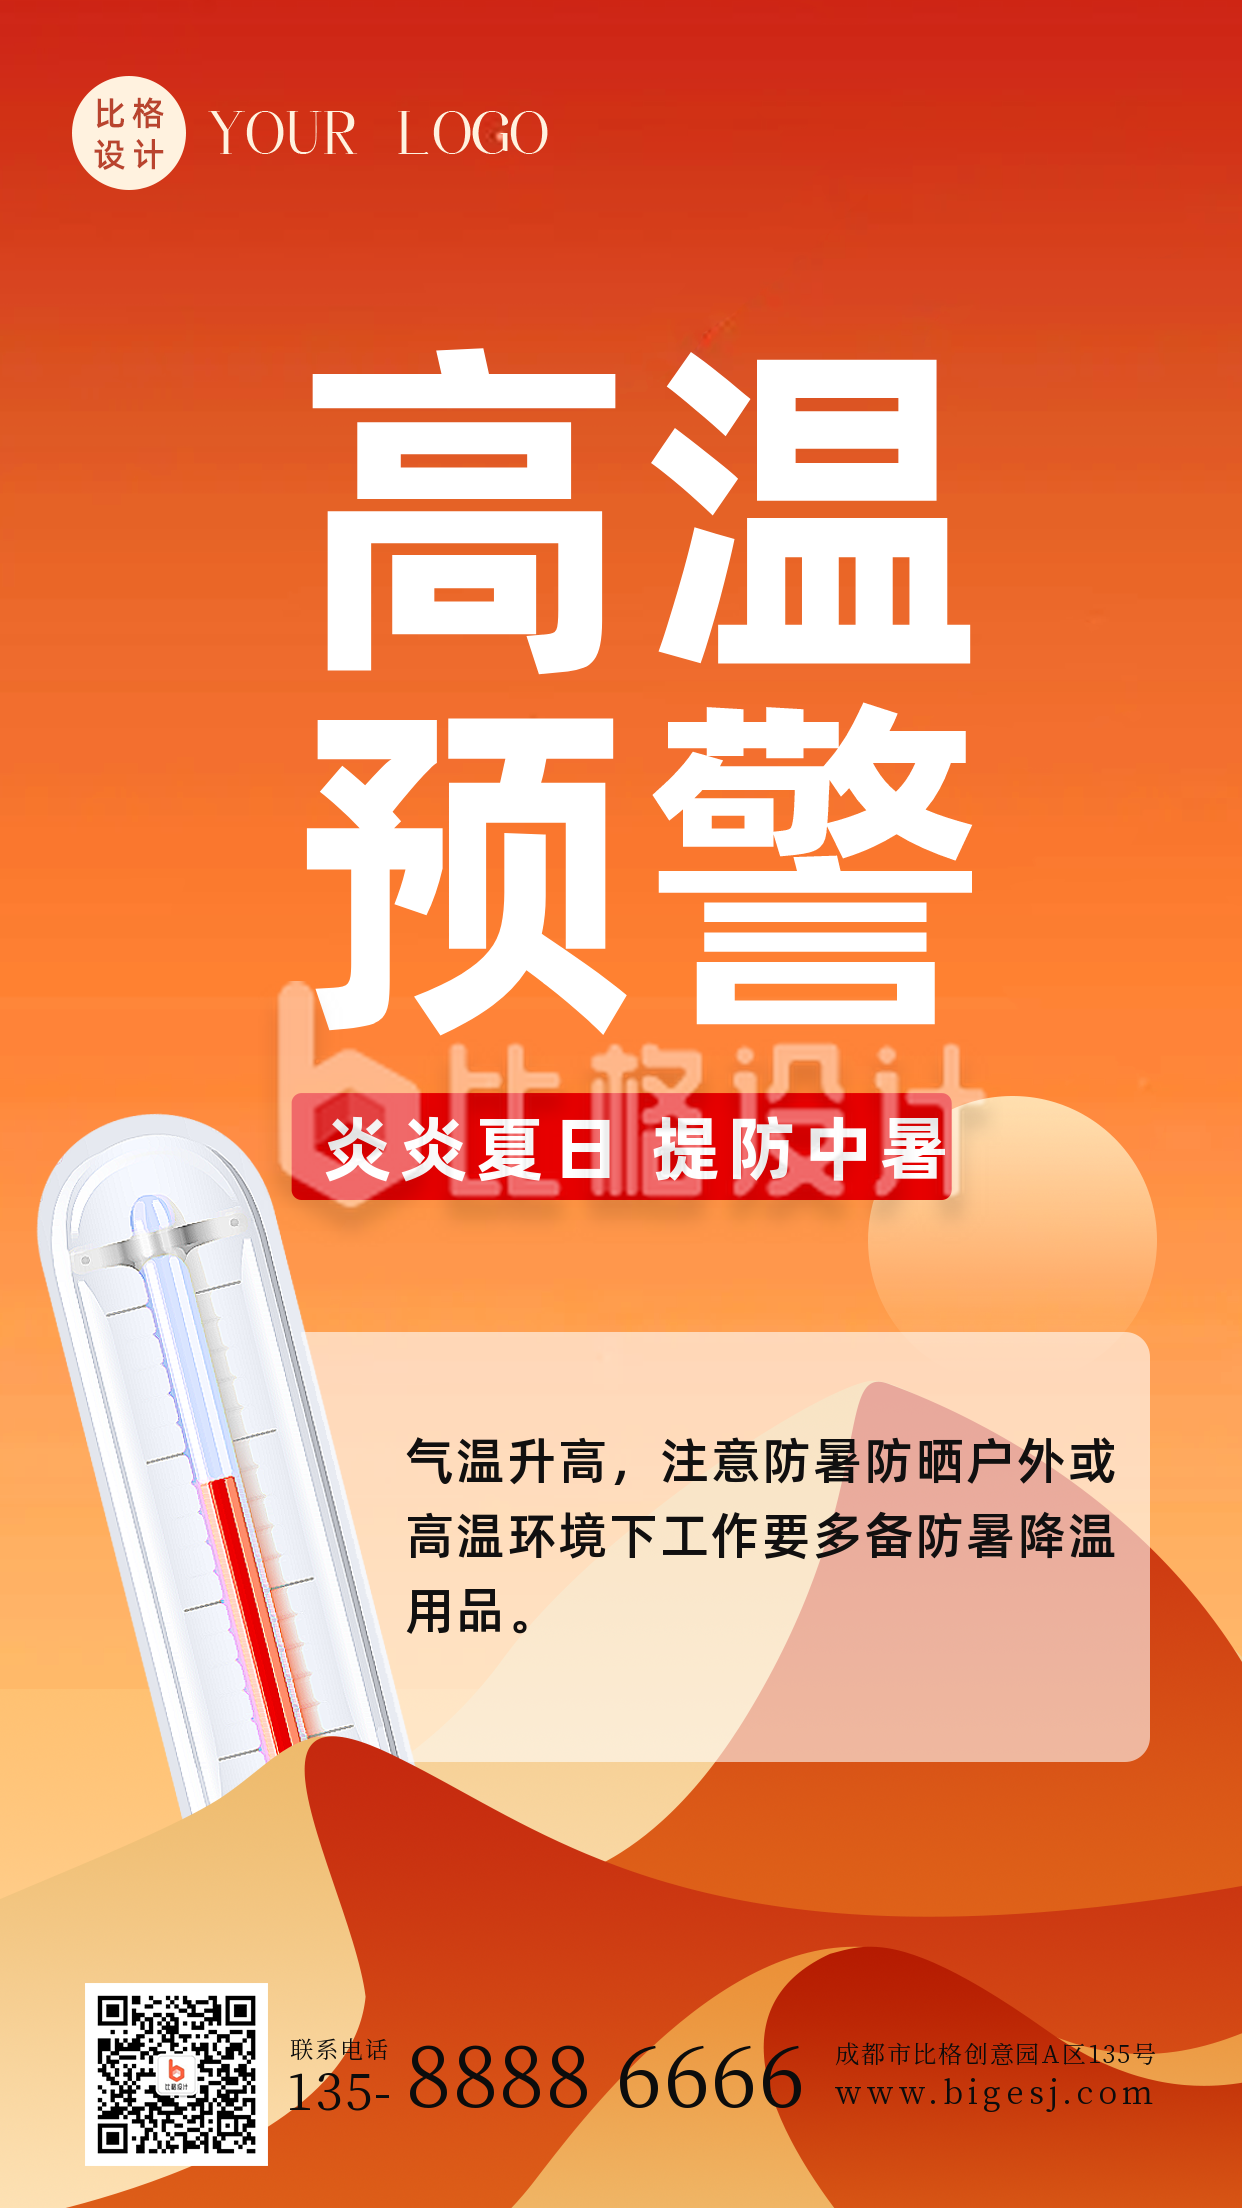 夏季高温预警防护措施科普手机海报